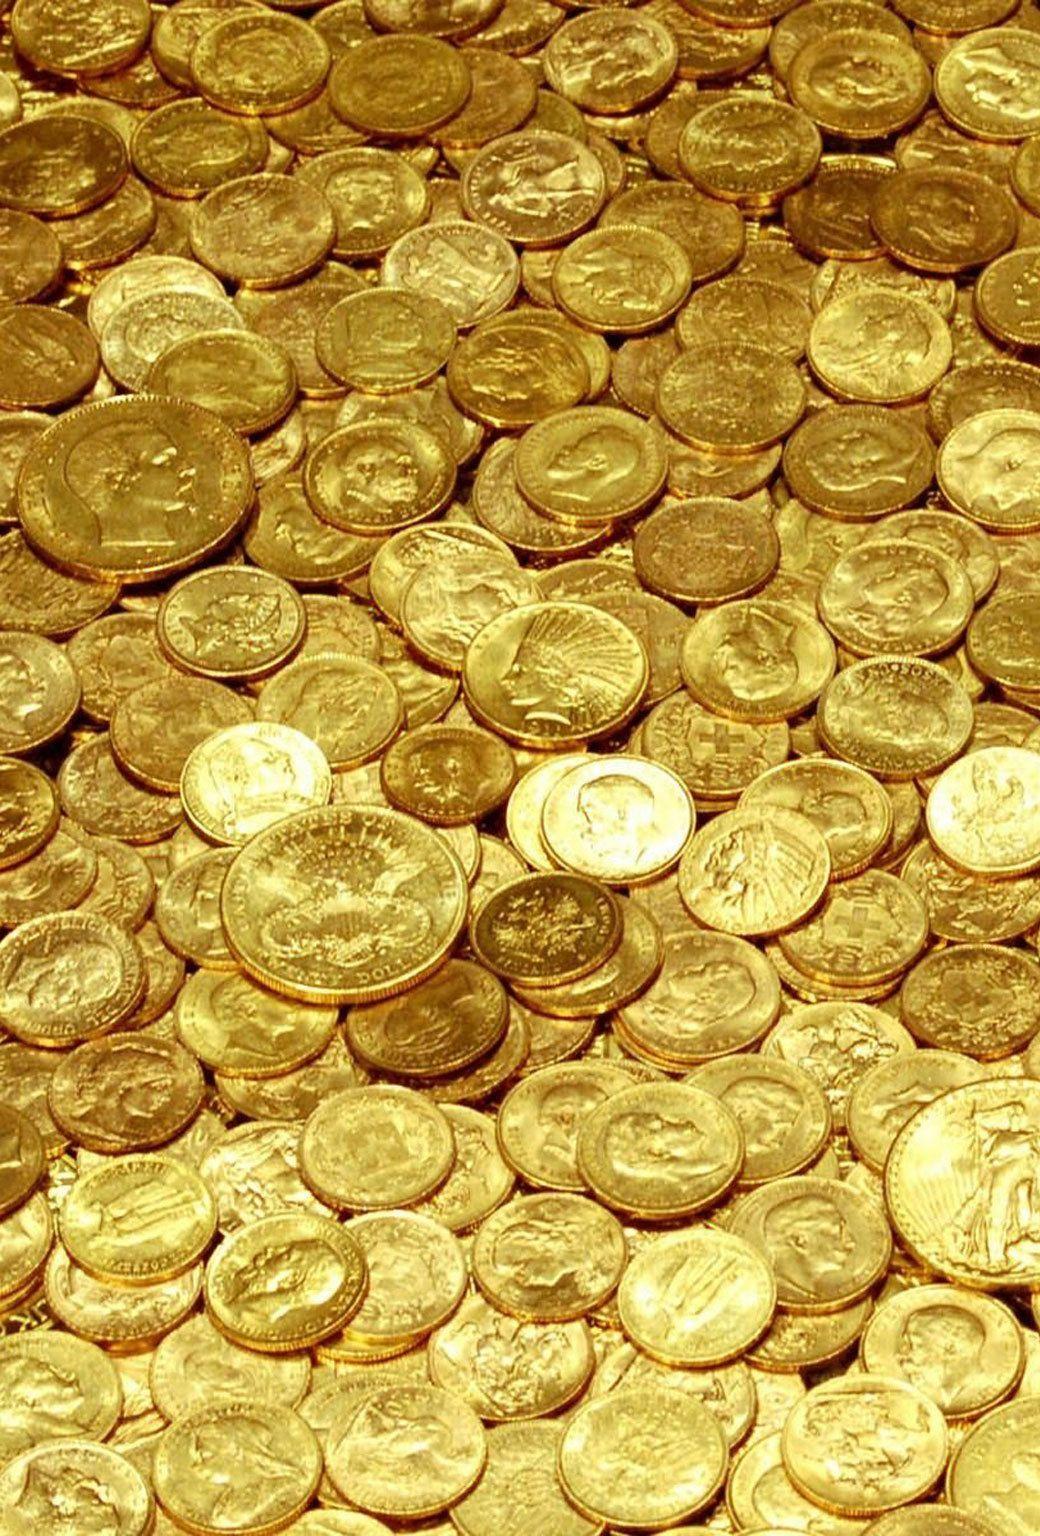 دانلود تصویر استوک جدید انبوه سکه های طلای دلار آمریکا 